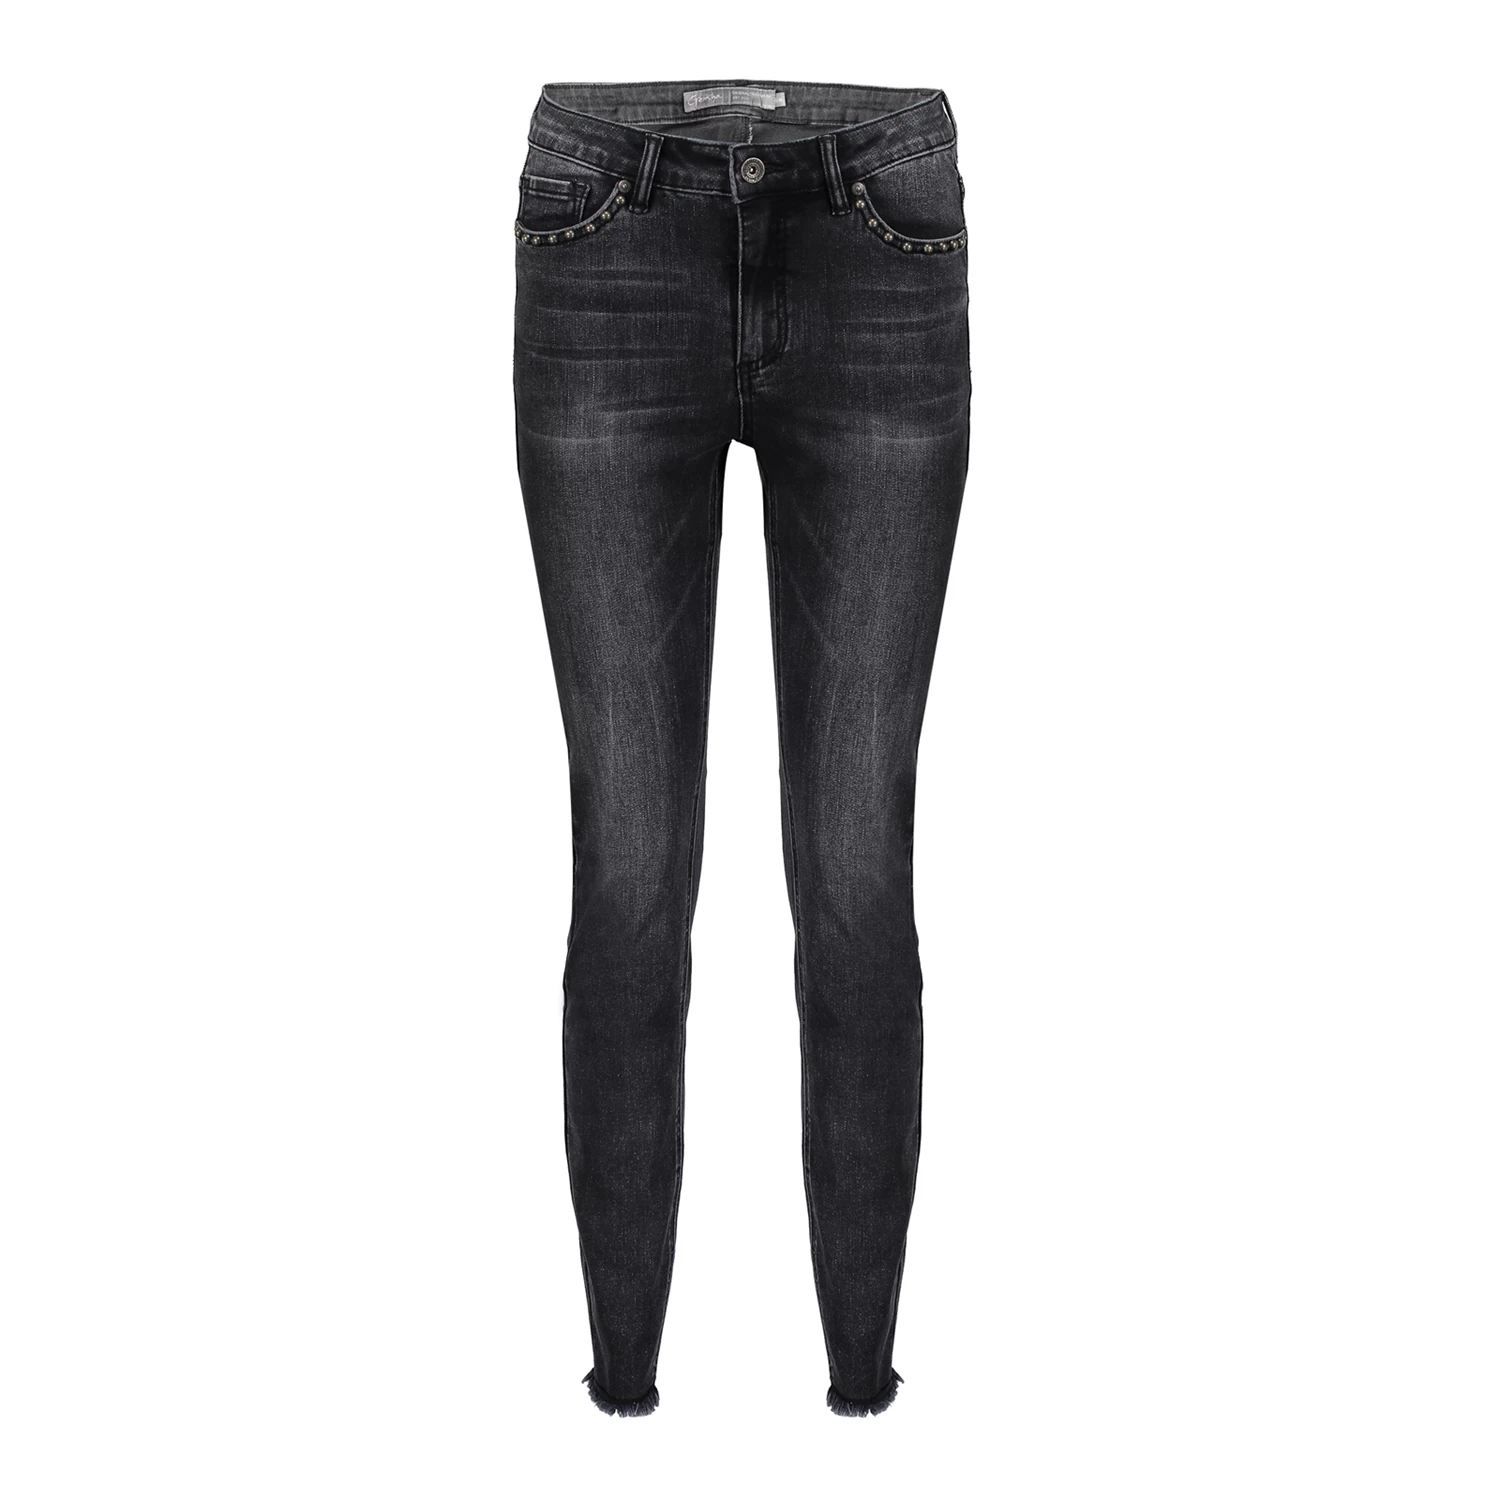 katje breken grind Geisha 5 pocket slimfit jeans 11843-24 online op Geishafashion.eu